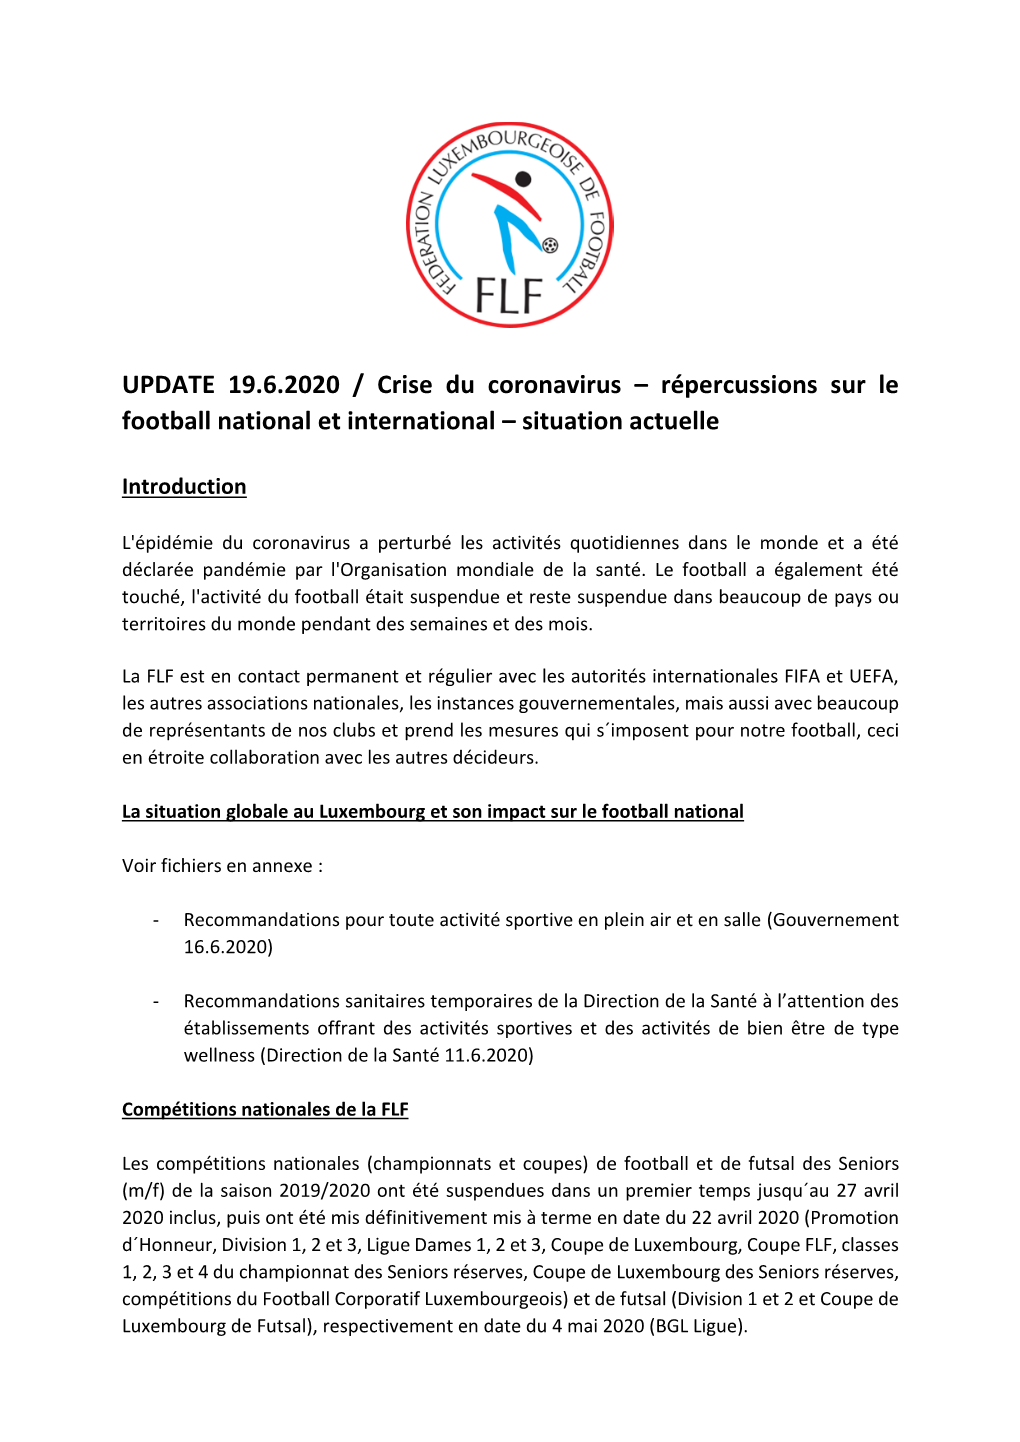 UPDATE 19.6.2020 / Crise Du Coronavirus – Répercussions Sur Le Football National Et International – Situation Actuelle